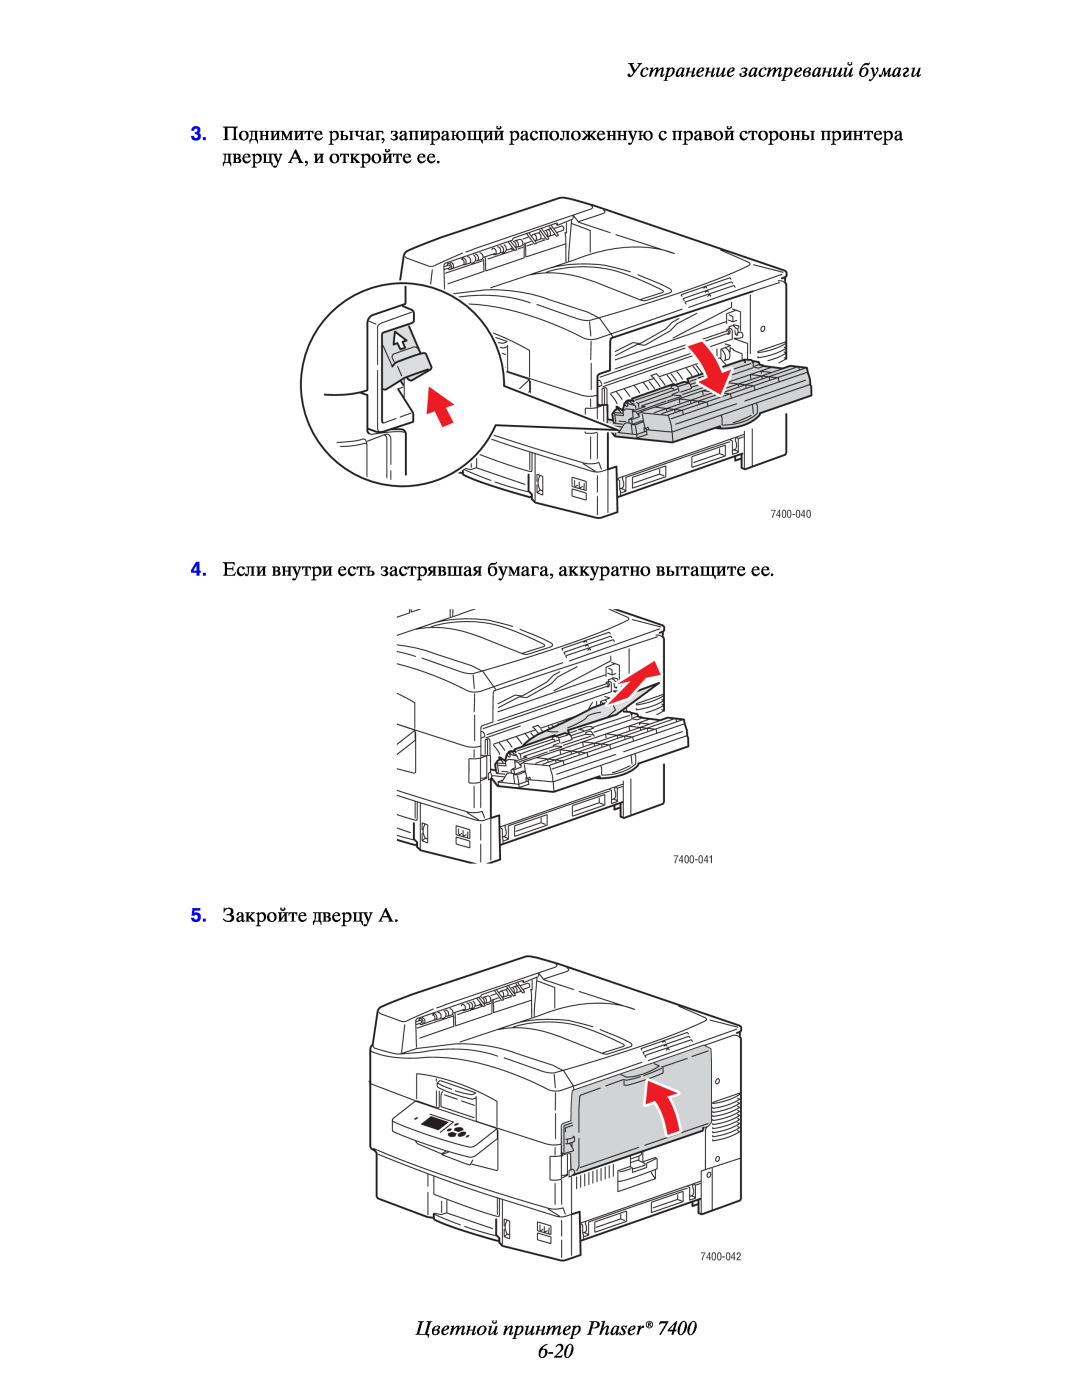 Xerox 7400 manual Цветной принтер Phaser 6-20, Устранение застреваний бумаги, 5.Закройте дверцу A 